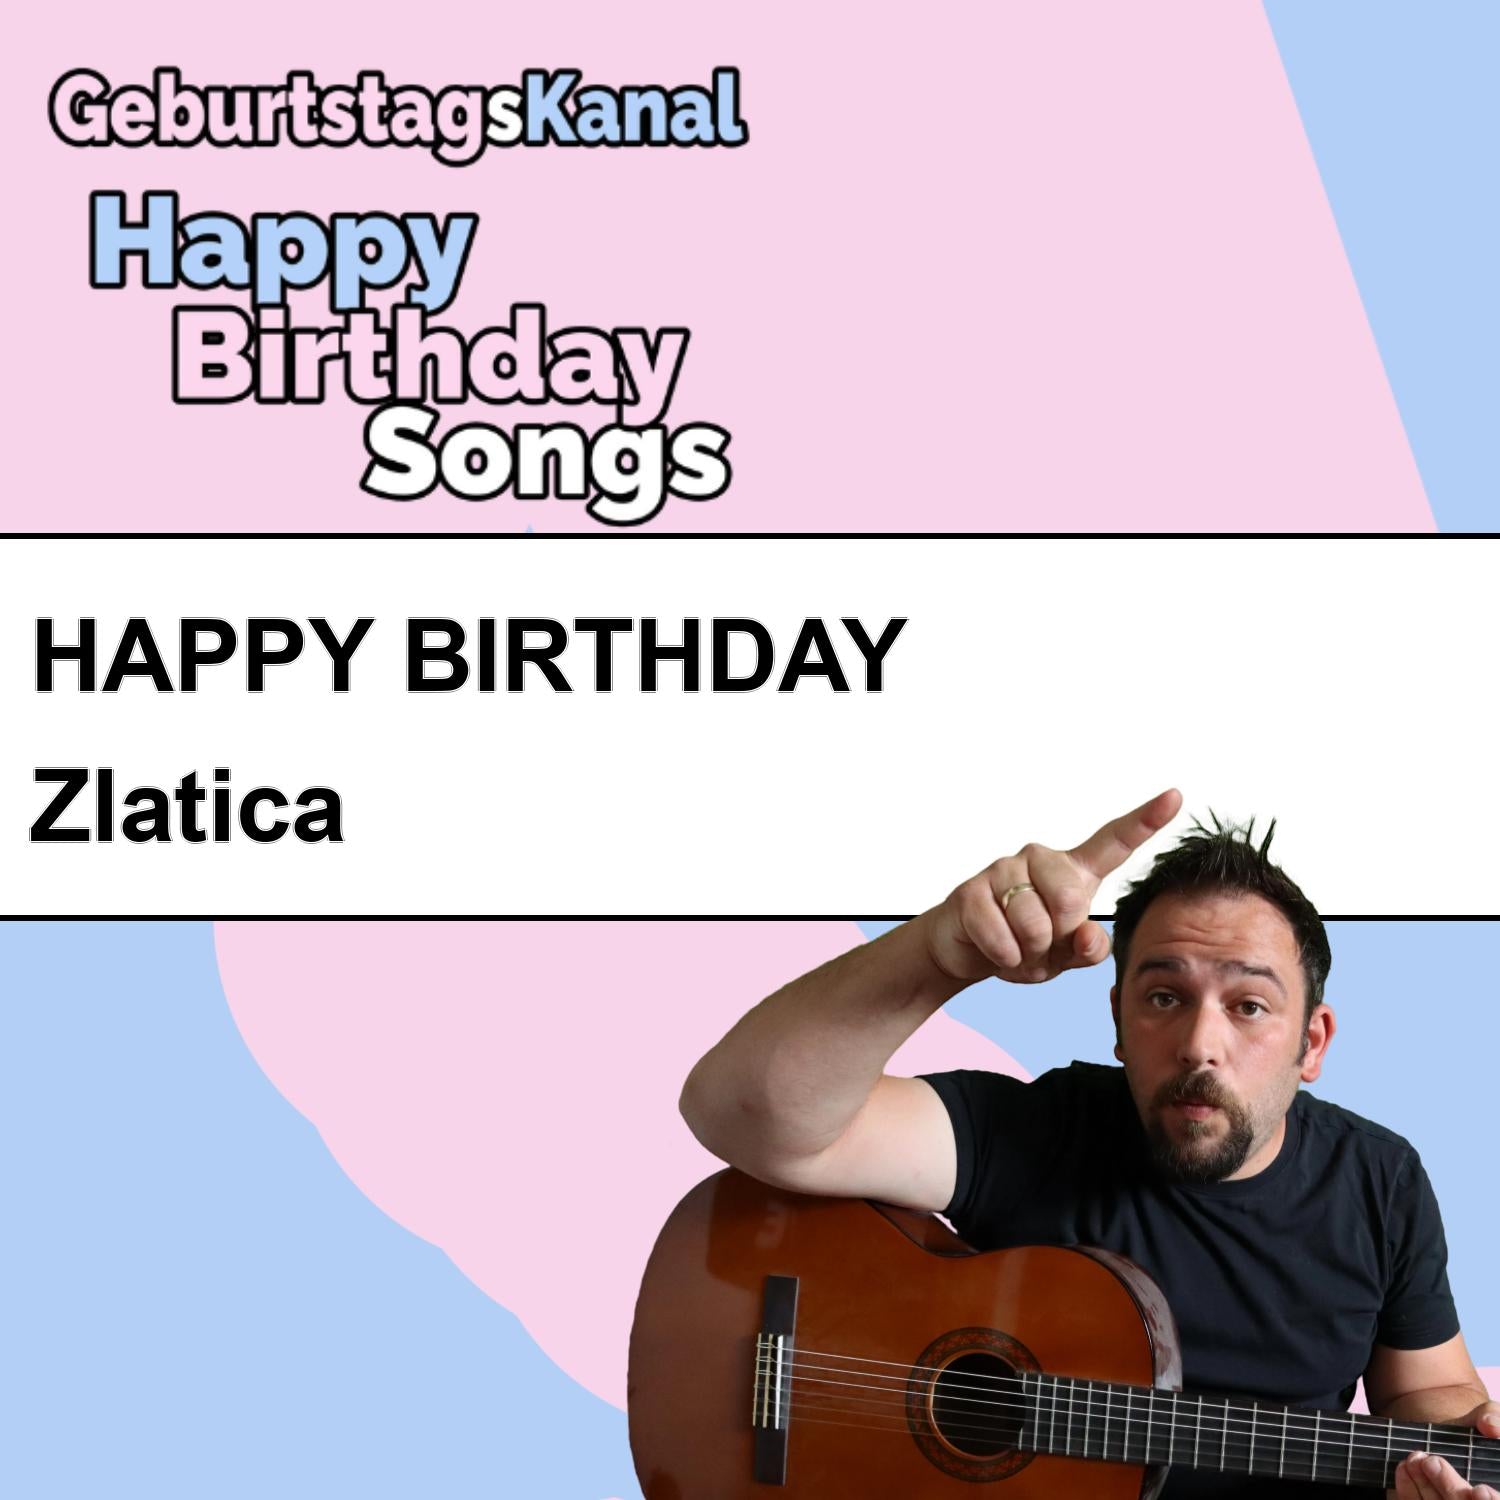 Produktbild Happy Birthday to you Zlatica mit Wunschgrußbotschaft